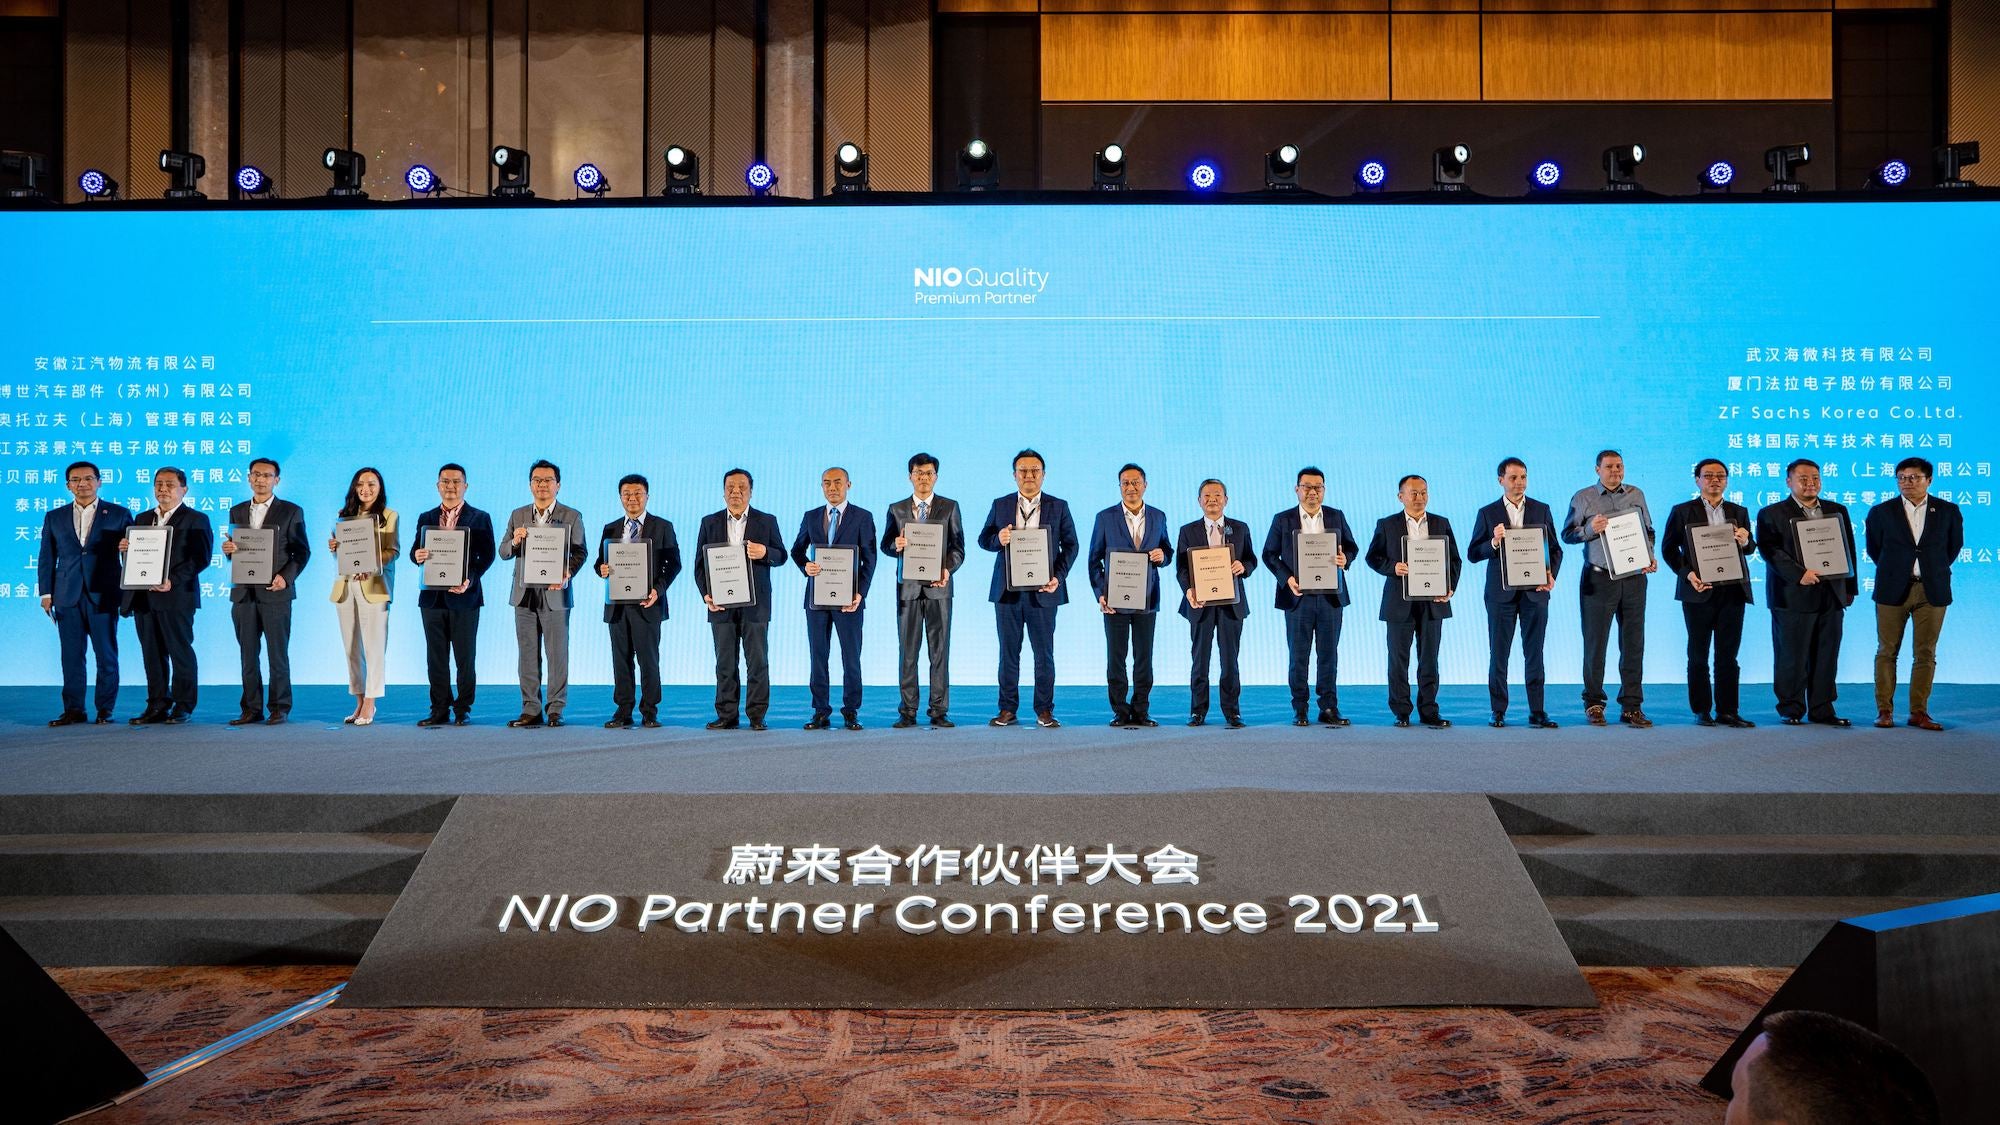 NIO Partner Conference 2021